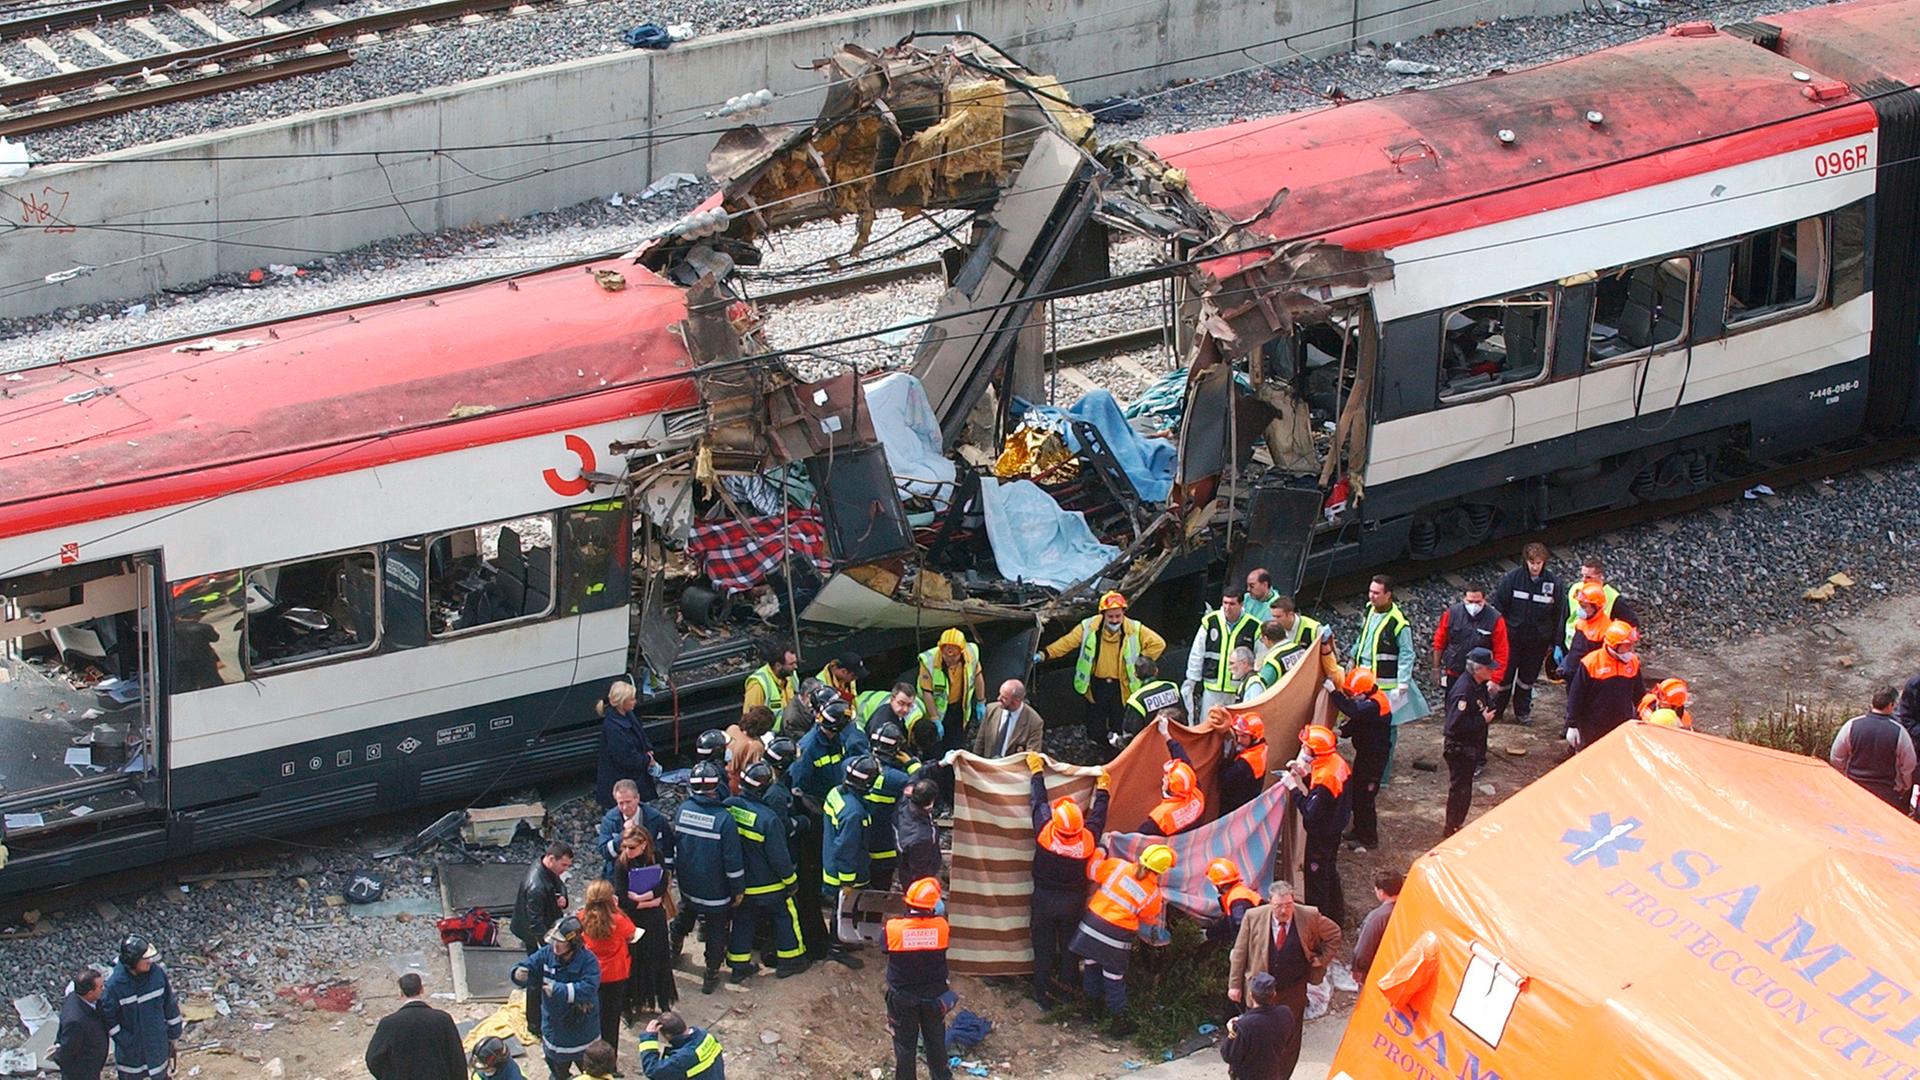 Der Bombenanschlag islamistischer Terroristen im spanischen Atocha am 11. März 2004 tötete 191 Menschen in der Rushhour.